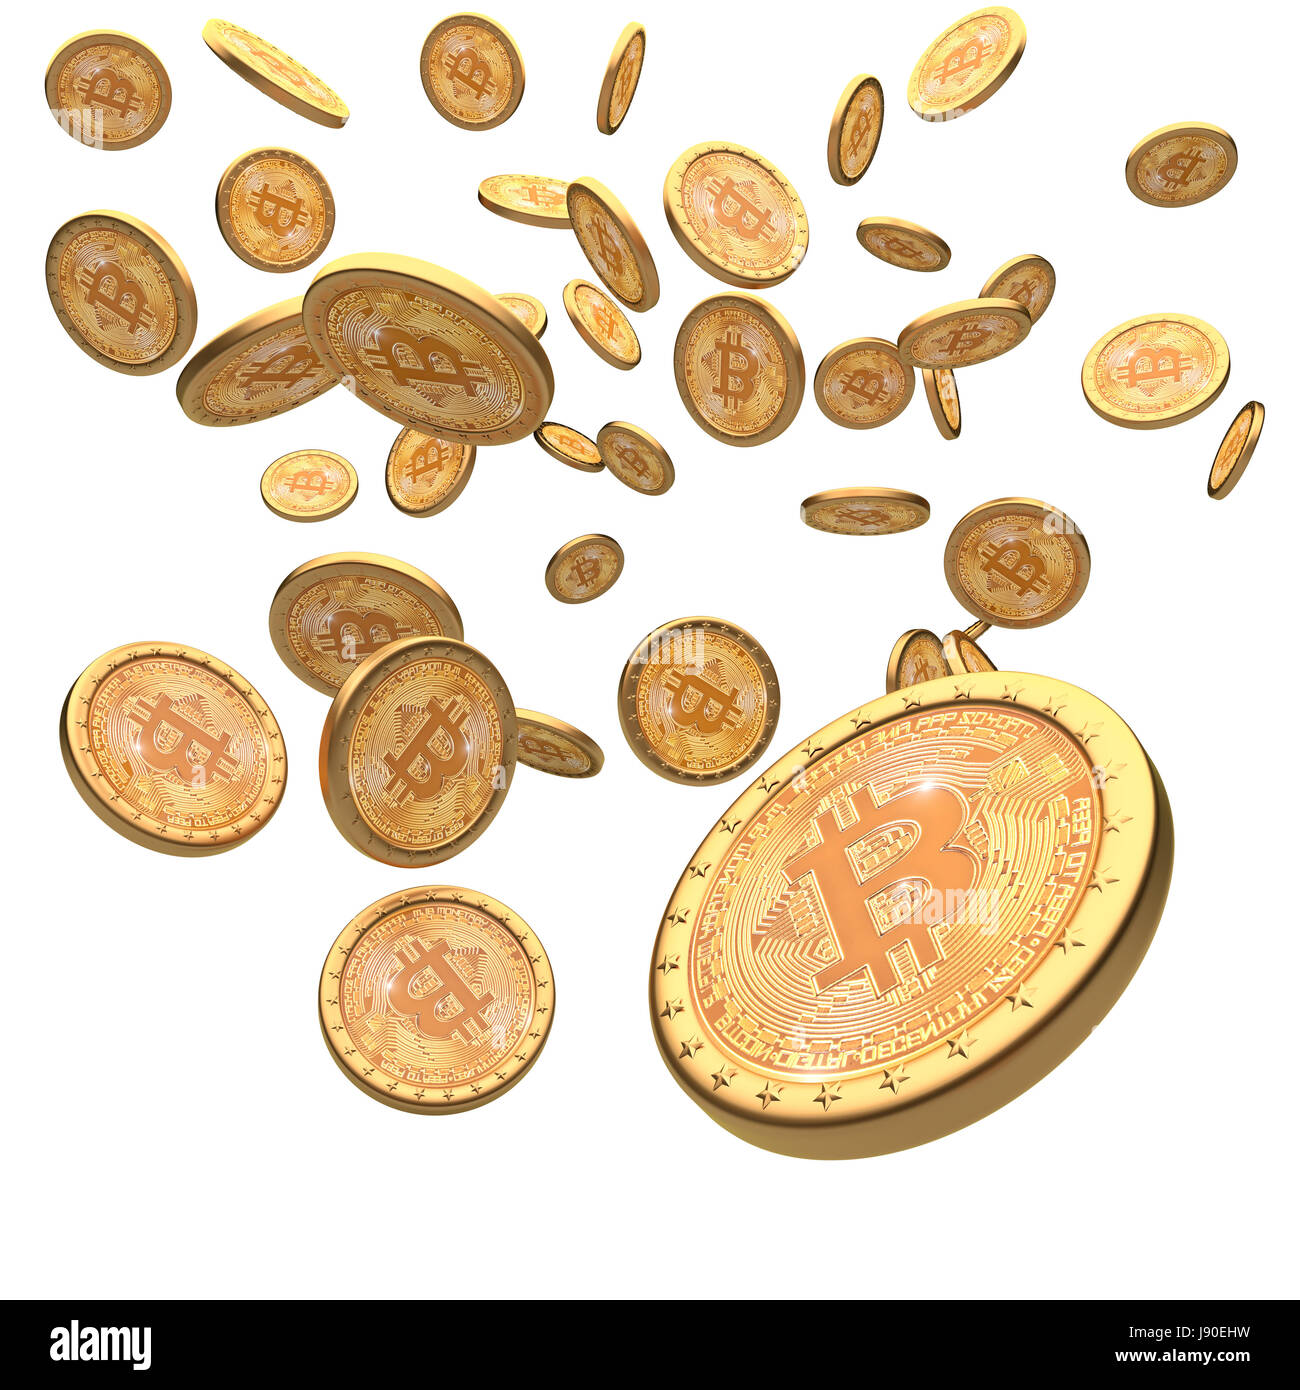 Bitcoin medaglia d'oro 3d rendering immagine Foto Stock